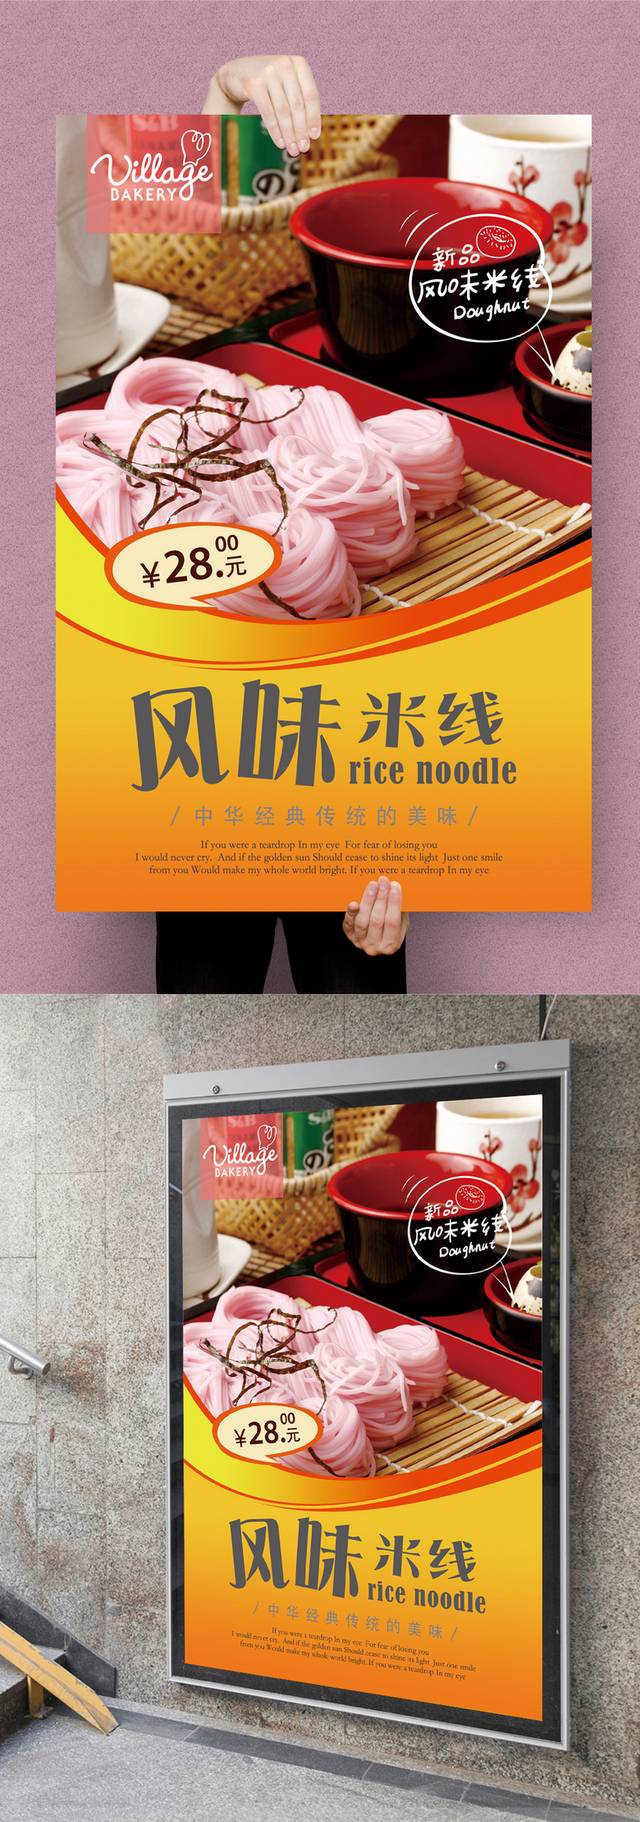 米线美食促销海报下载